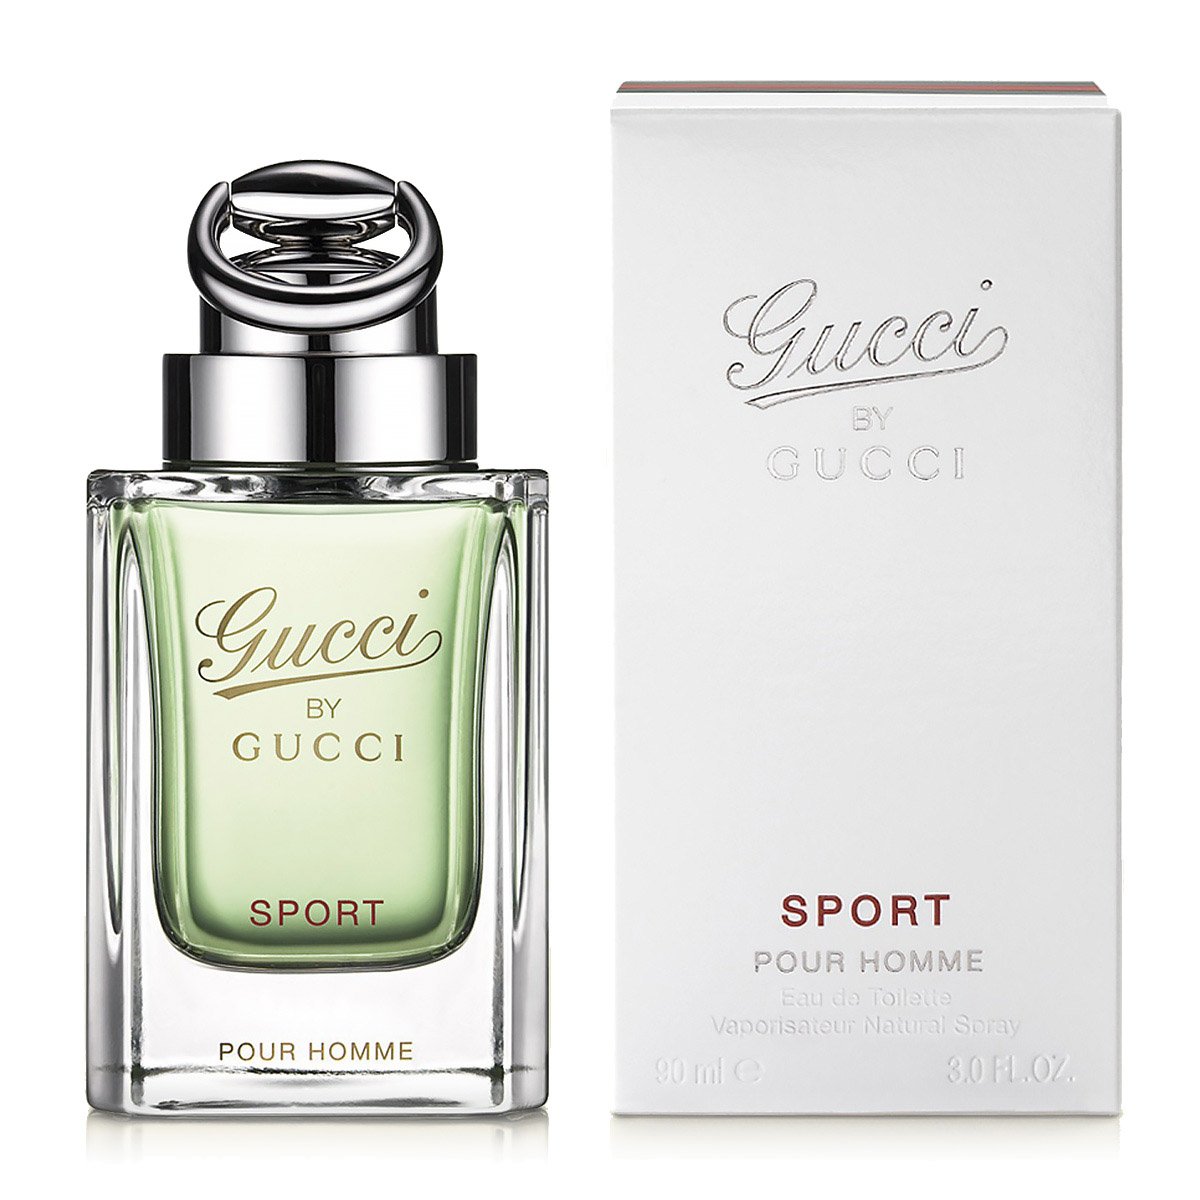 Pour homme sport. Gucci by Gucci Sport pour homme (Gucci). Gucci by Gucci Sport. Gucci by Gucci Sport pour homme 90ml. Gucci by Gucci Sport 90 мл.